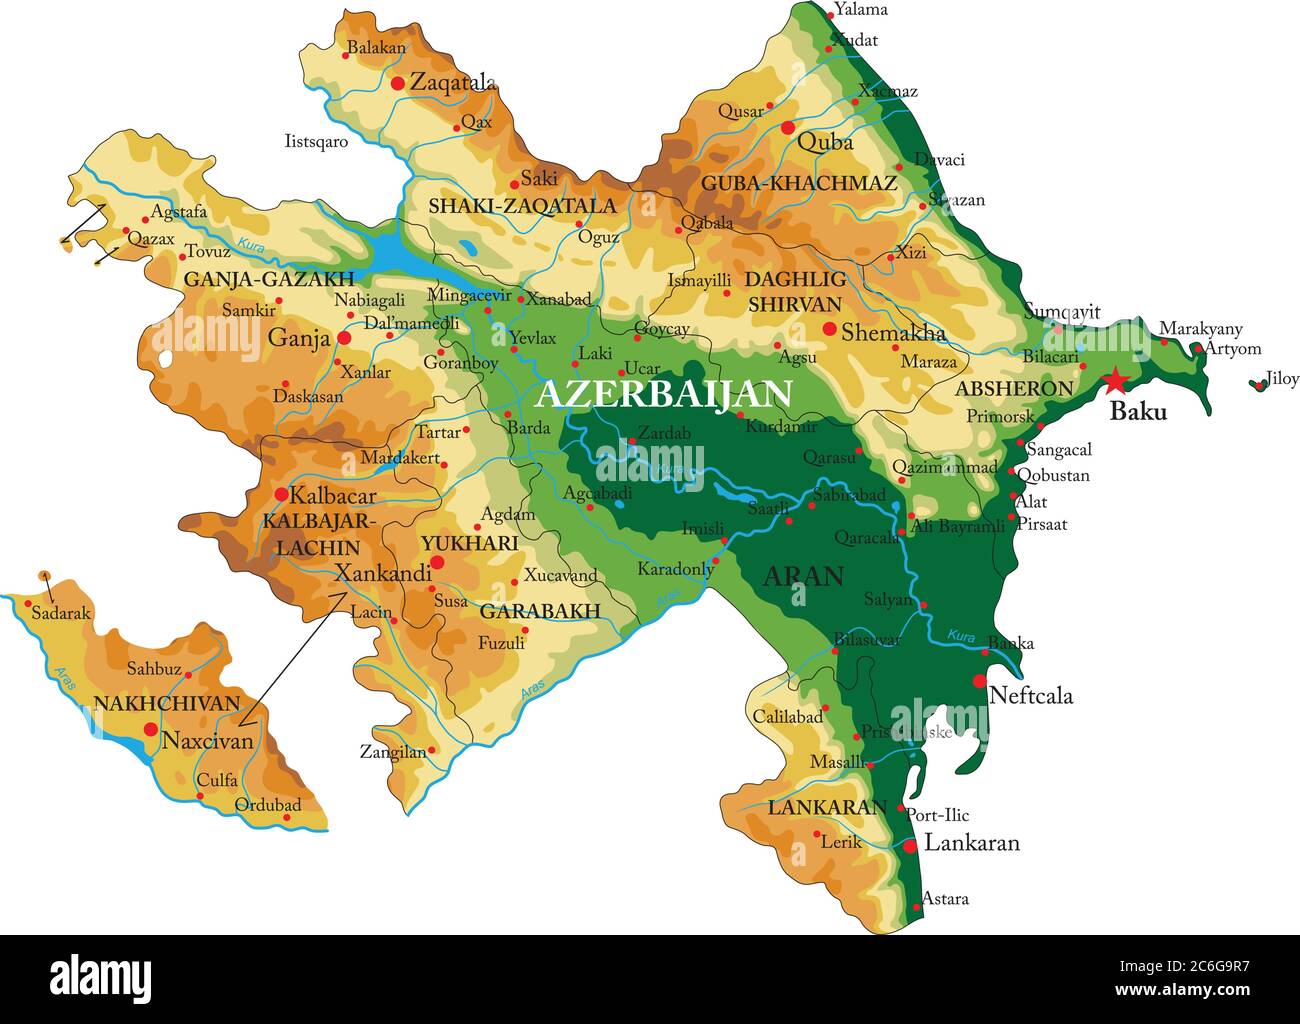 Azerbaijan physical map Stock Vector